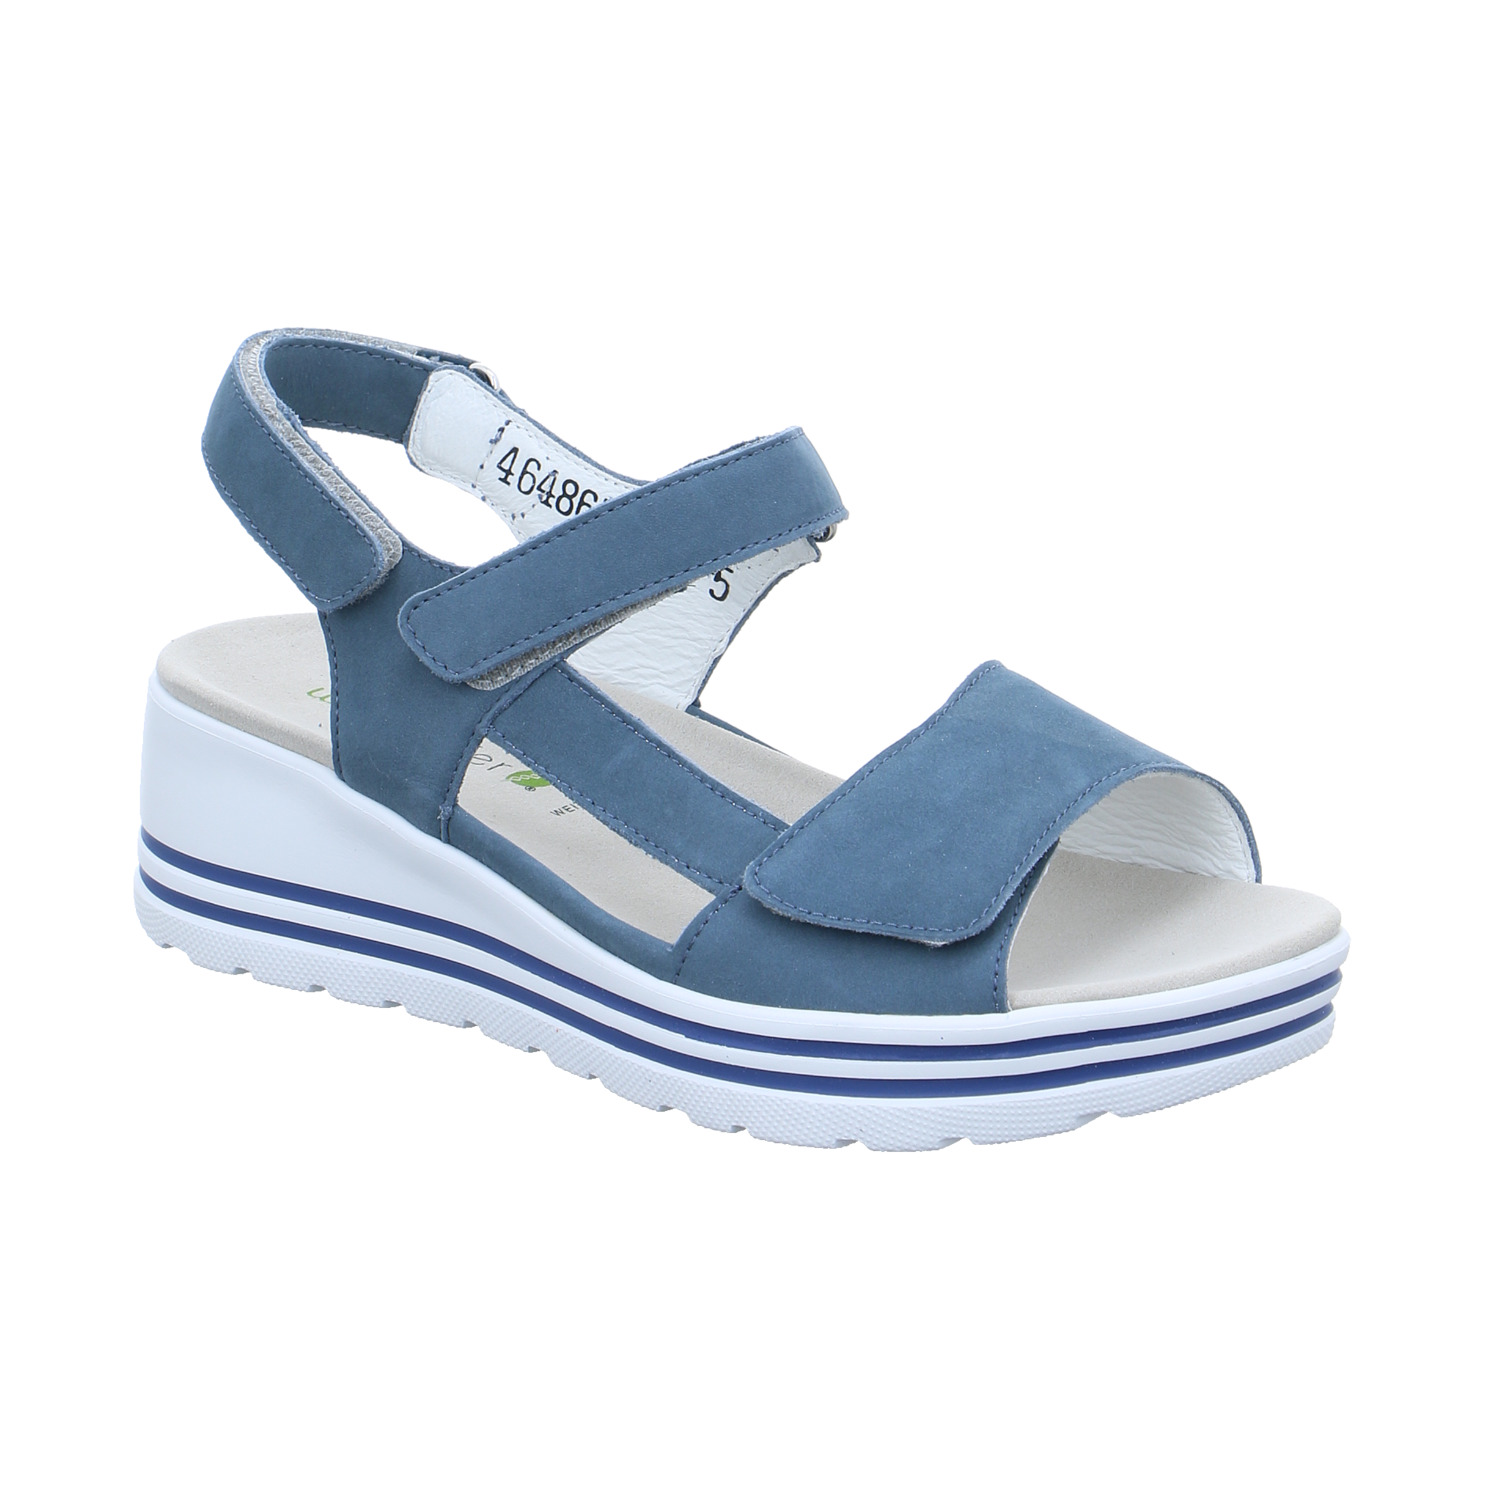 WALDLÄUFER Comfort-Sandalette Jeansblau Leder mit Wechselfussbett